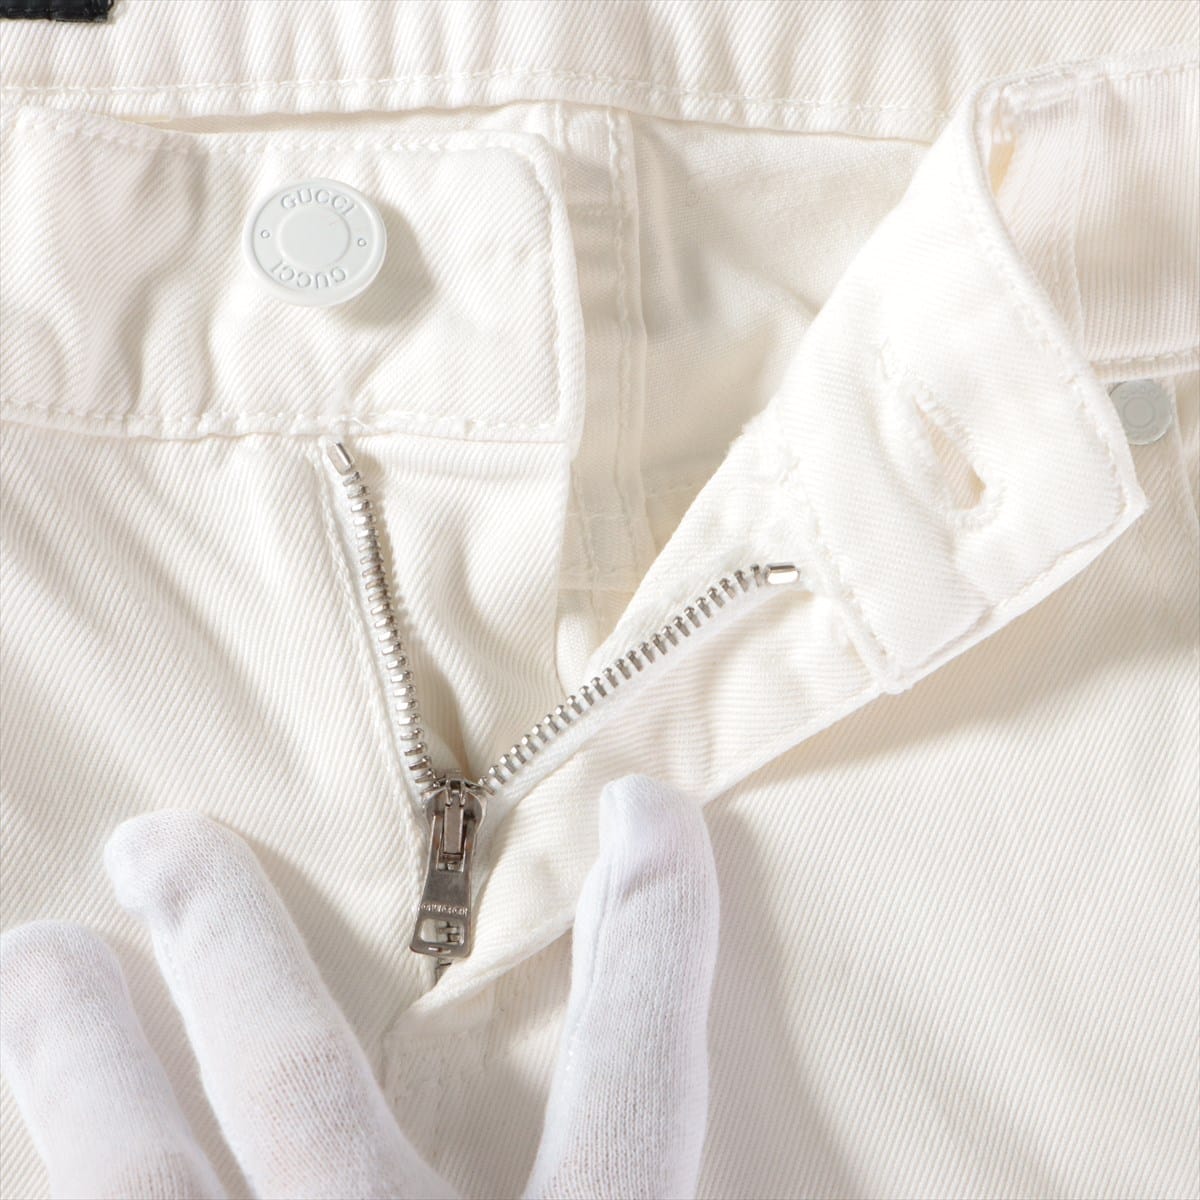 Gucci Guccioli Cotton Denim pants 38 Ladies' White